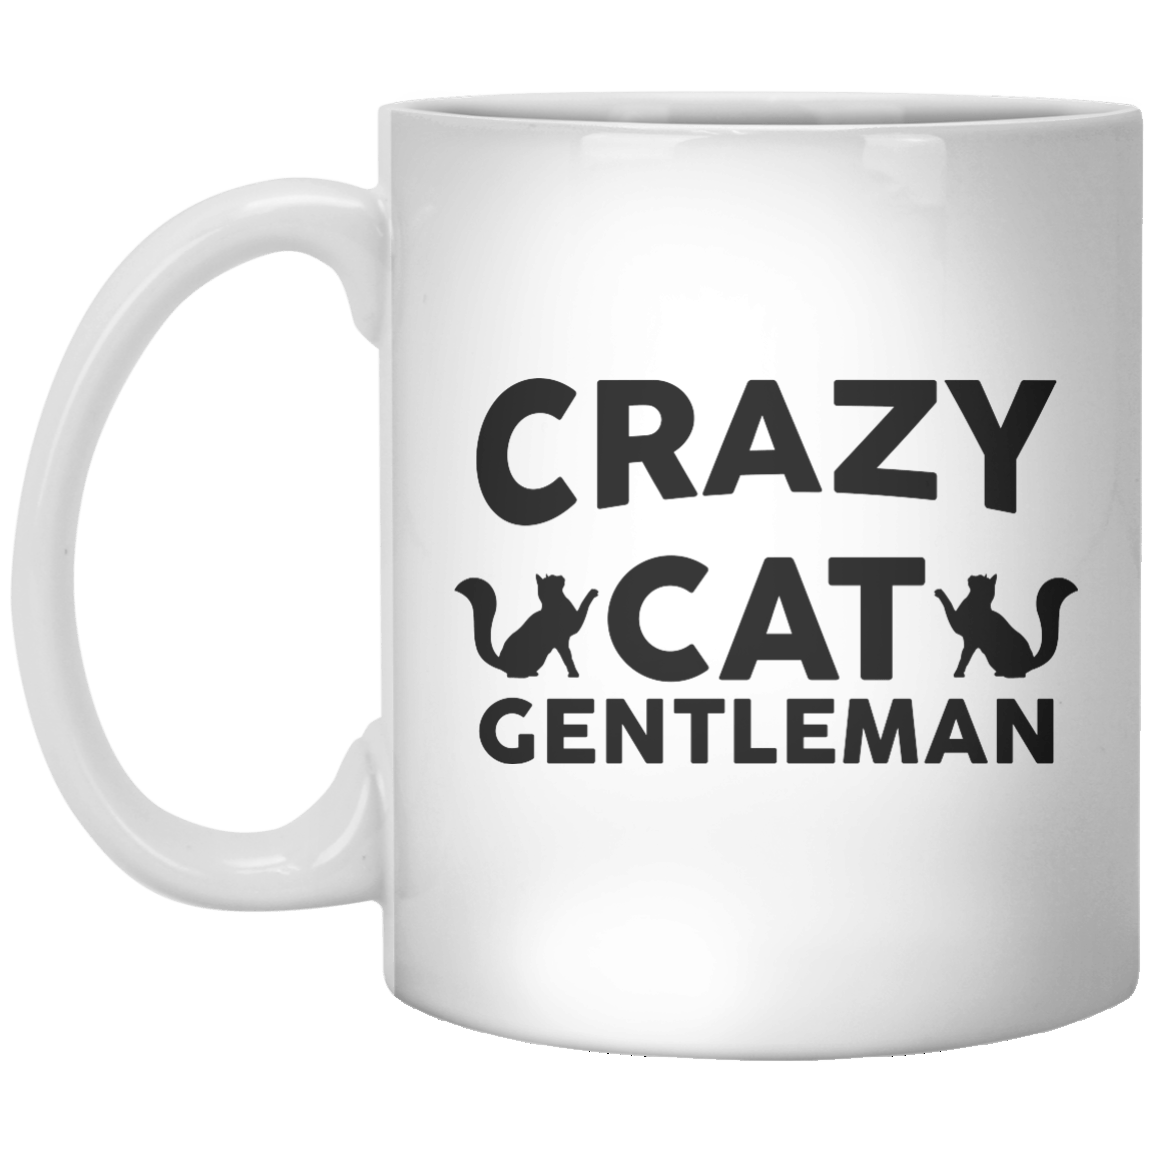 Crazy Cat Gentleman - Shirtoopia